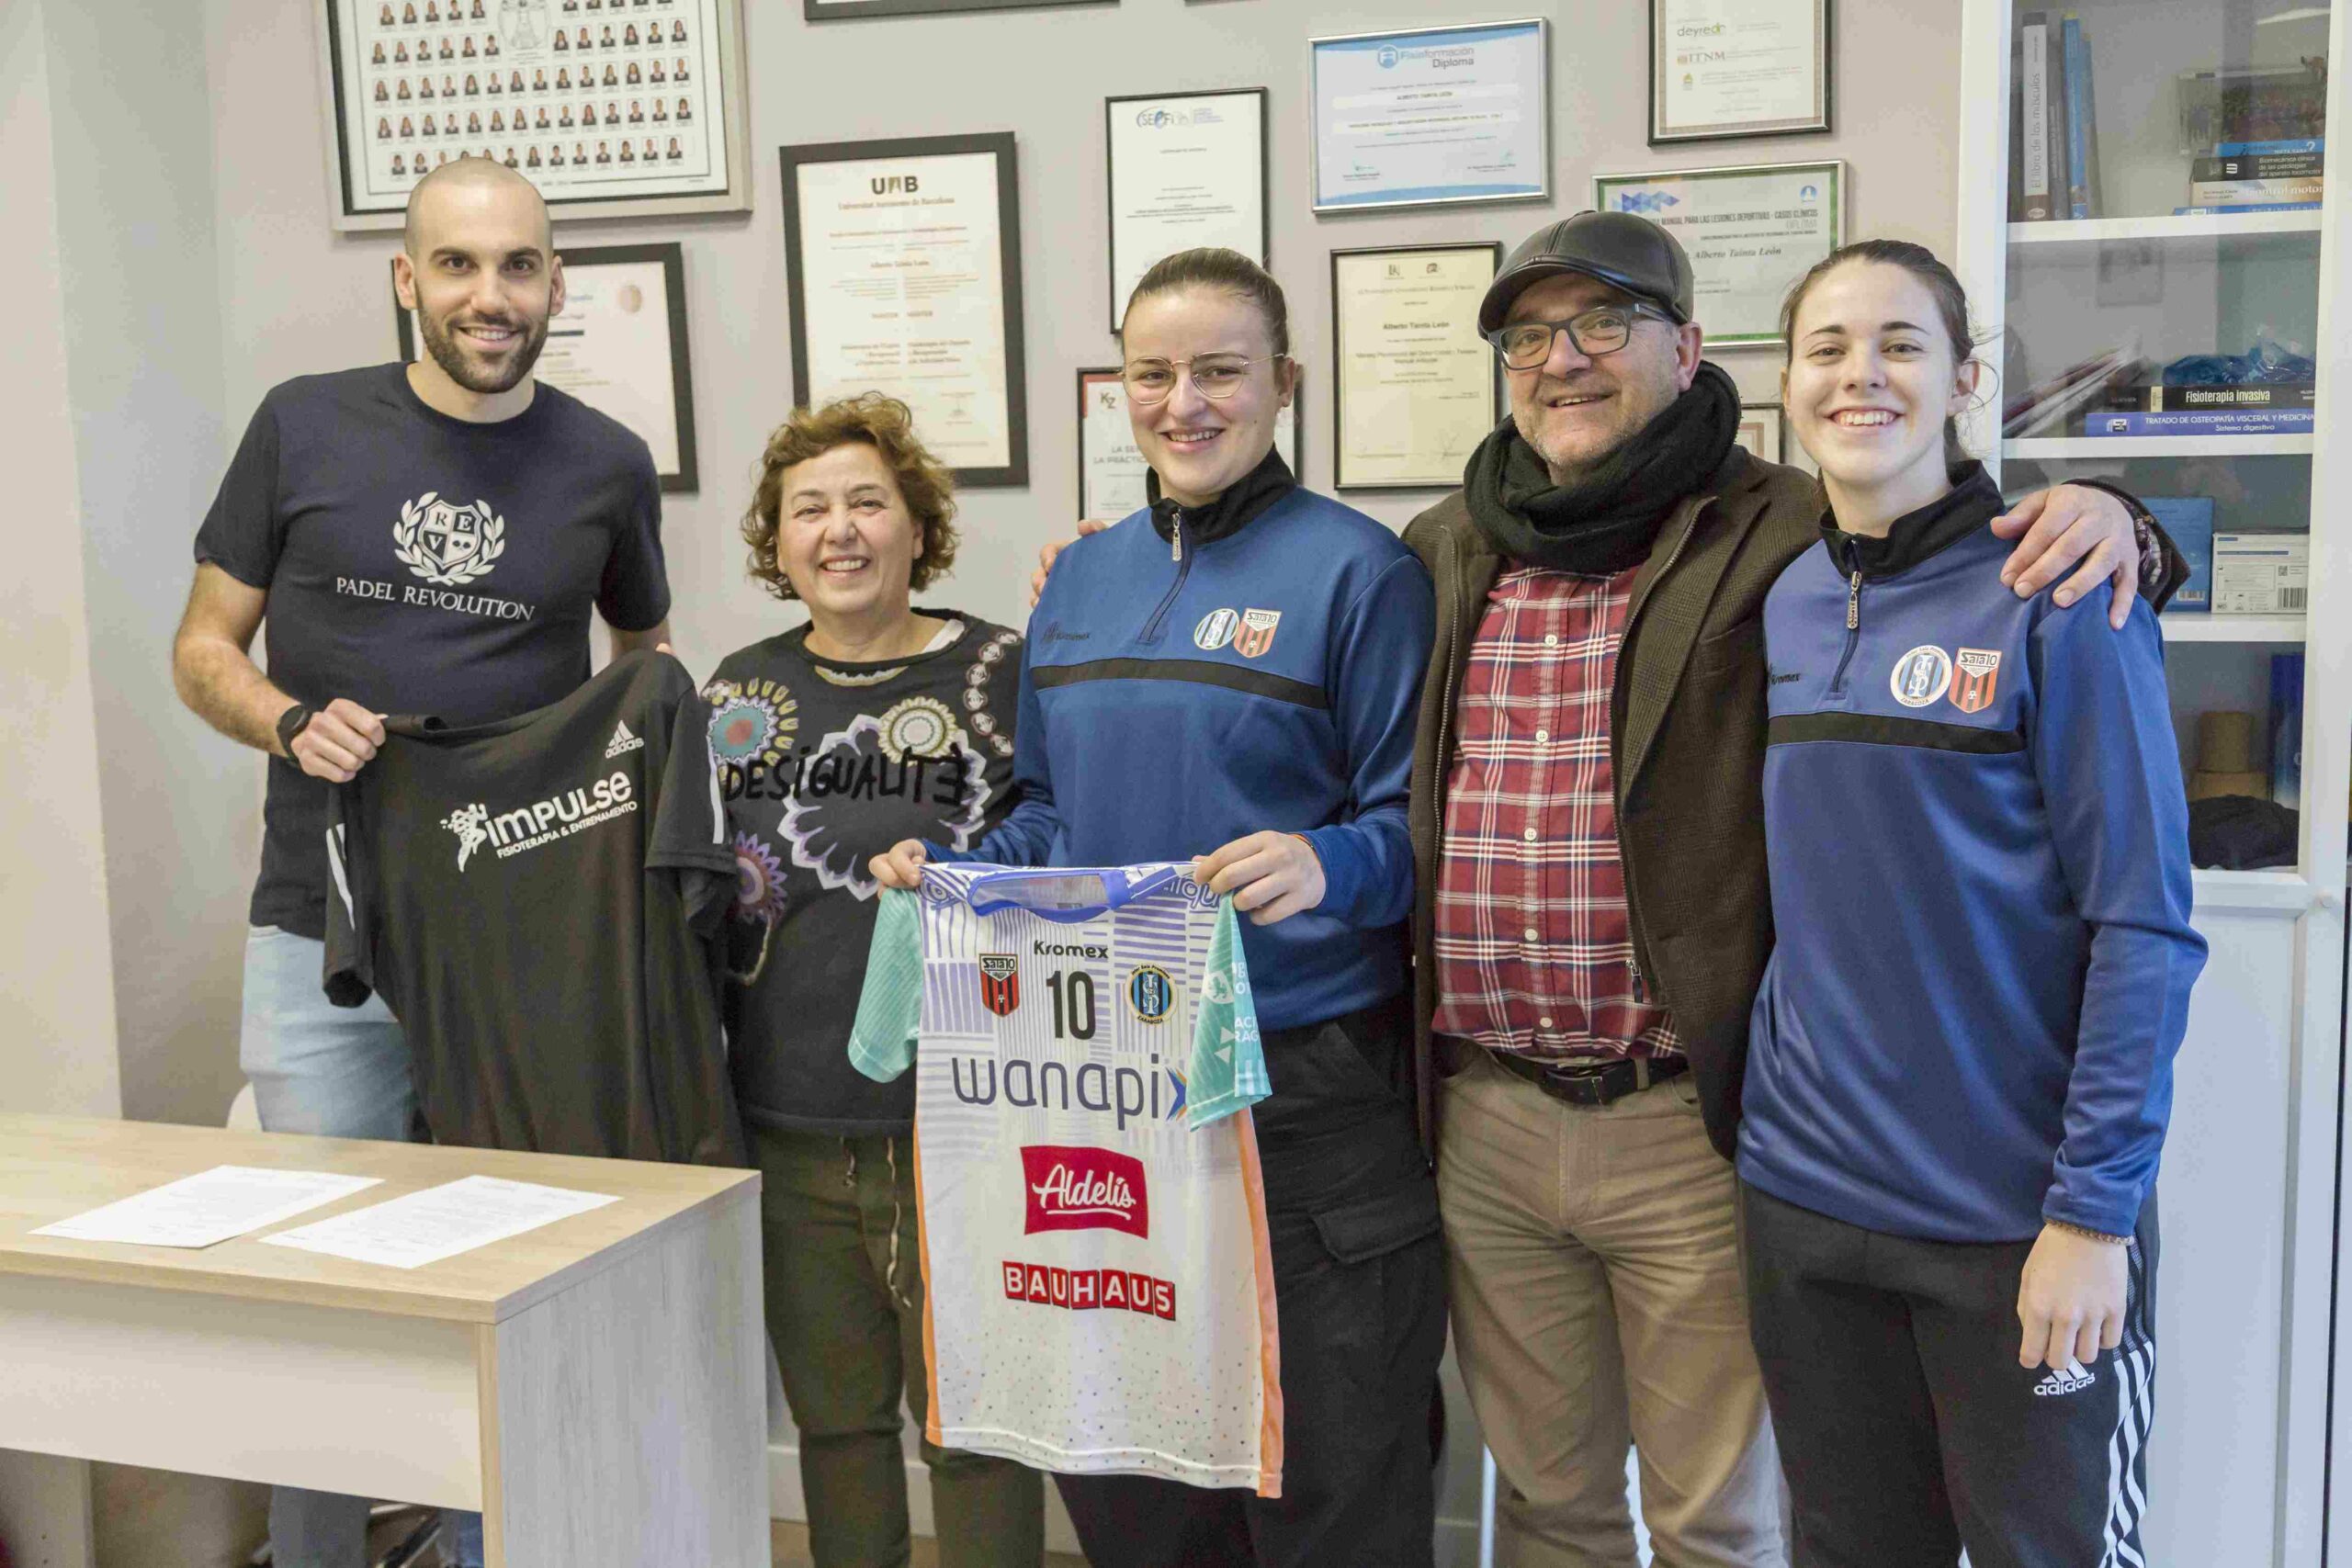 InterSala 10 Zaragoza firma un convenio con Impulse Fisioterapia y entrenamiento!